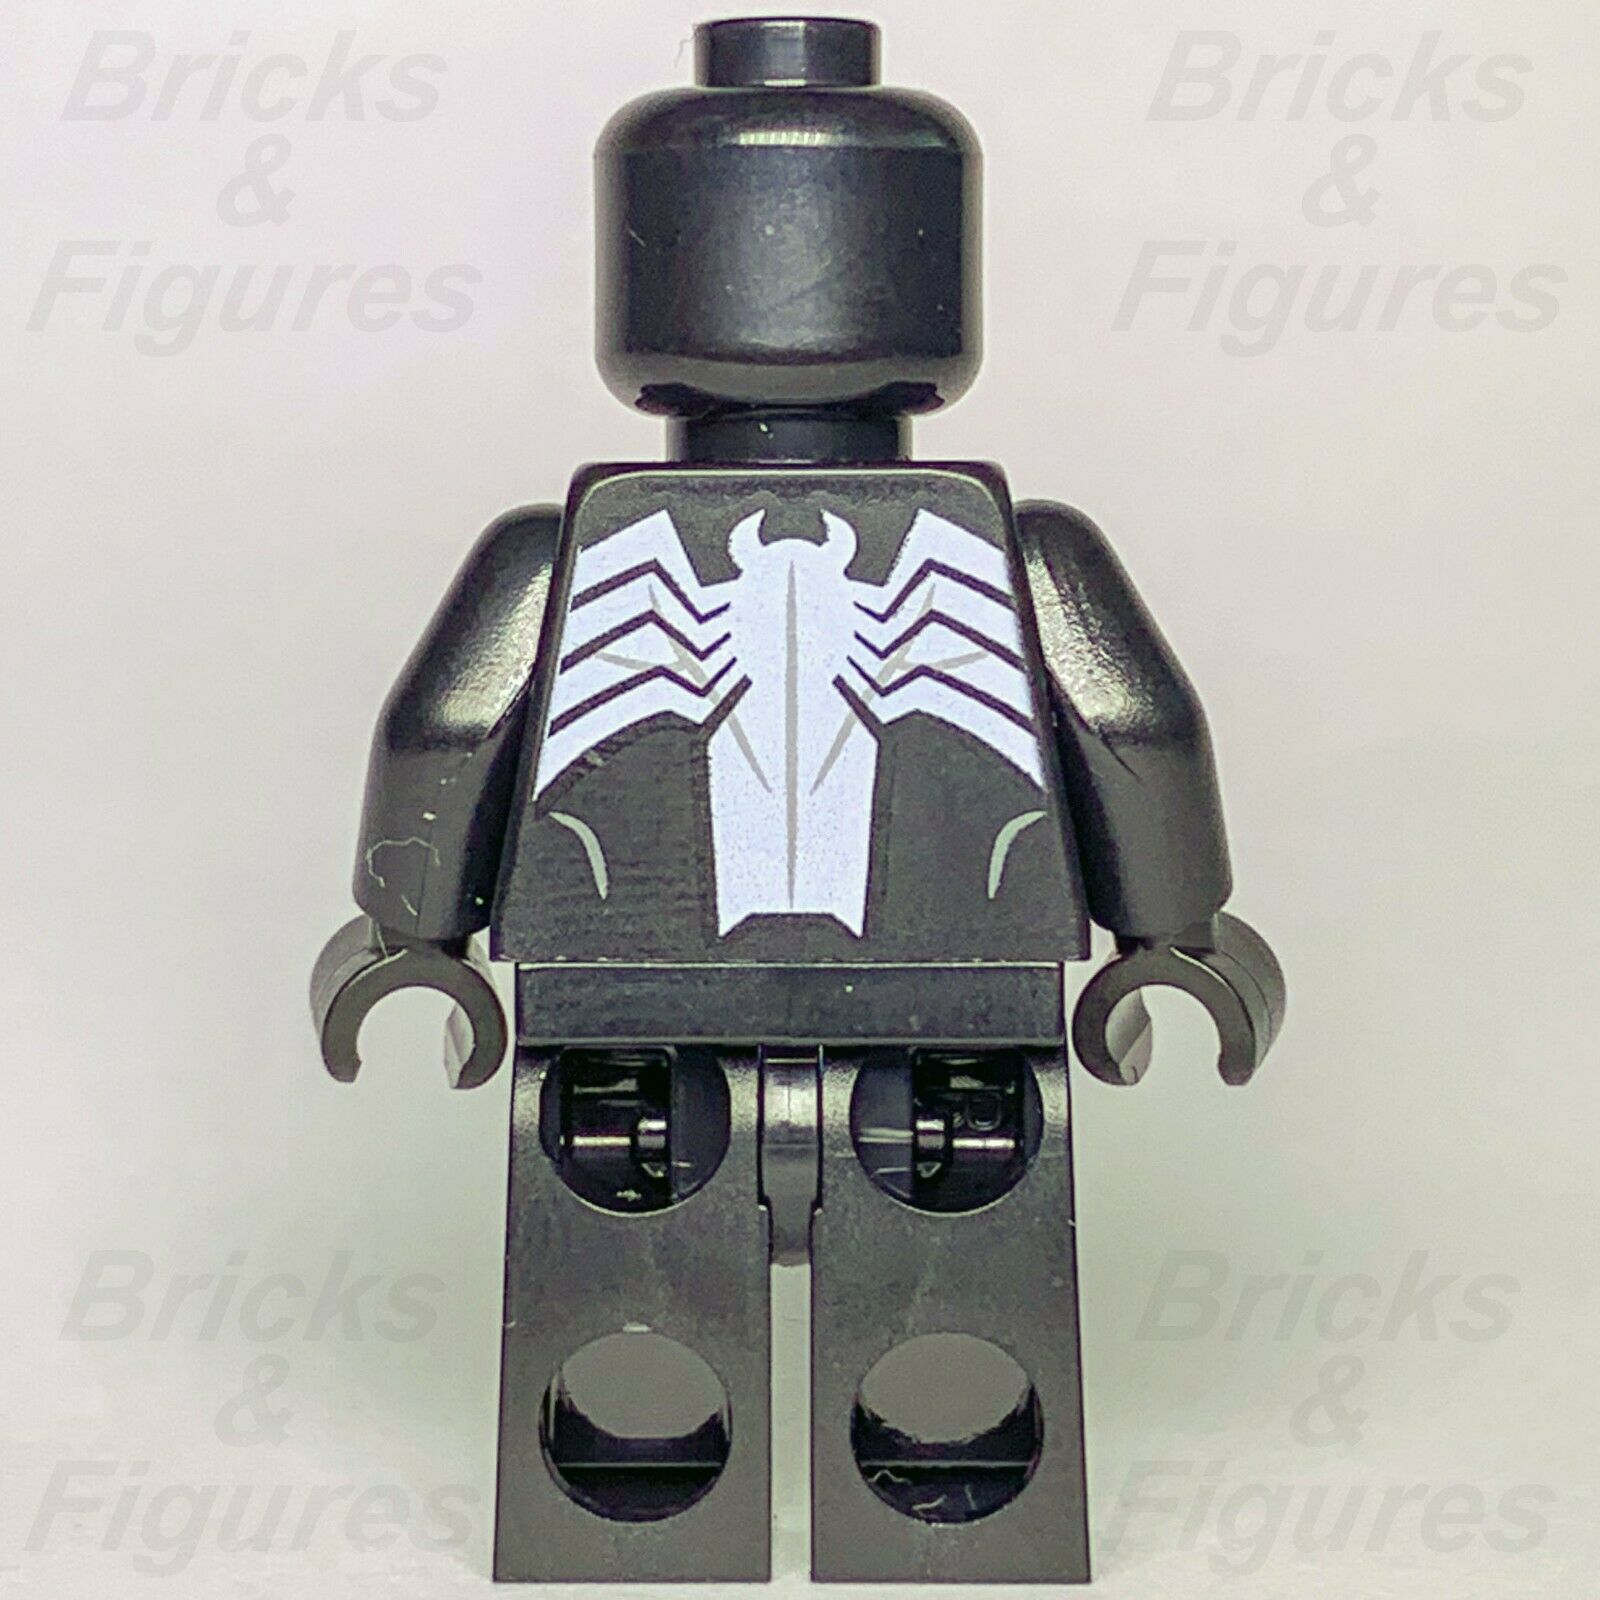 New Marvel Spider-Man Super Heroes LEGO Venom Eddie Brock Minifigure 76115 - Bricks & Figures